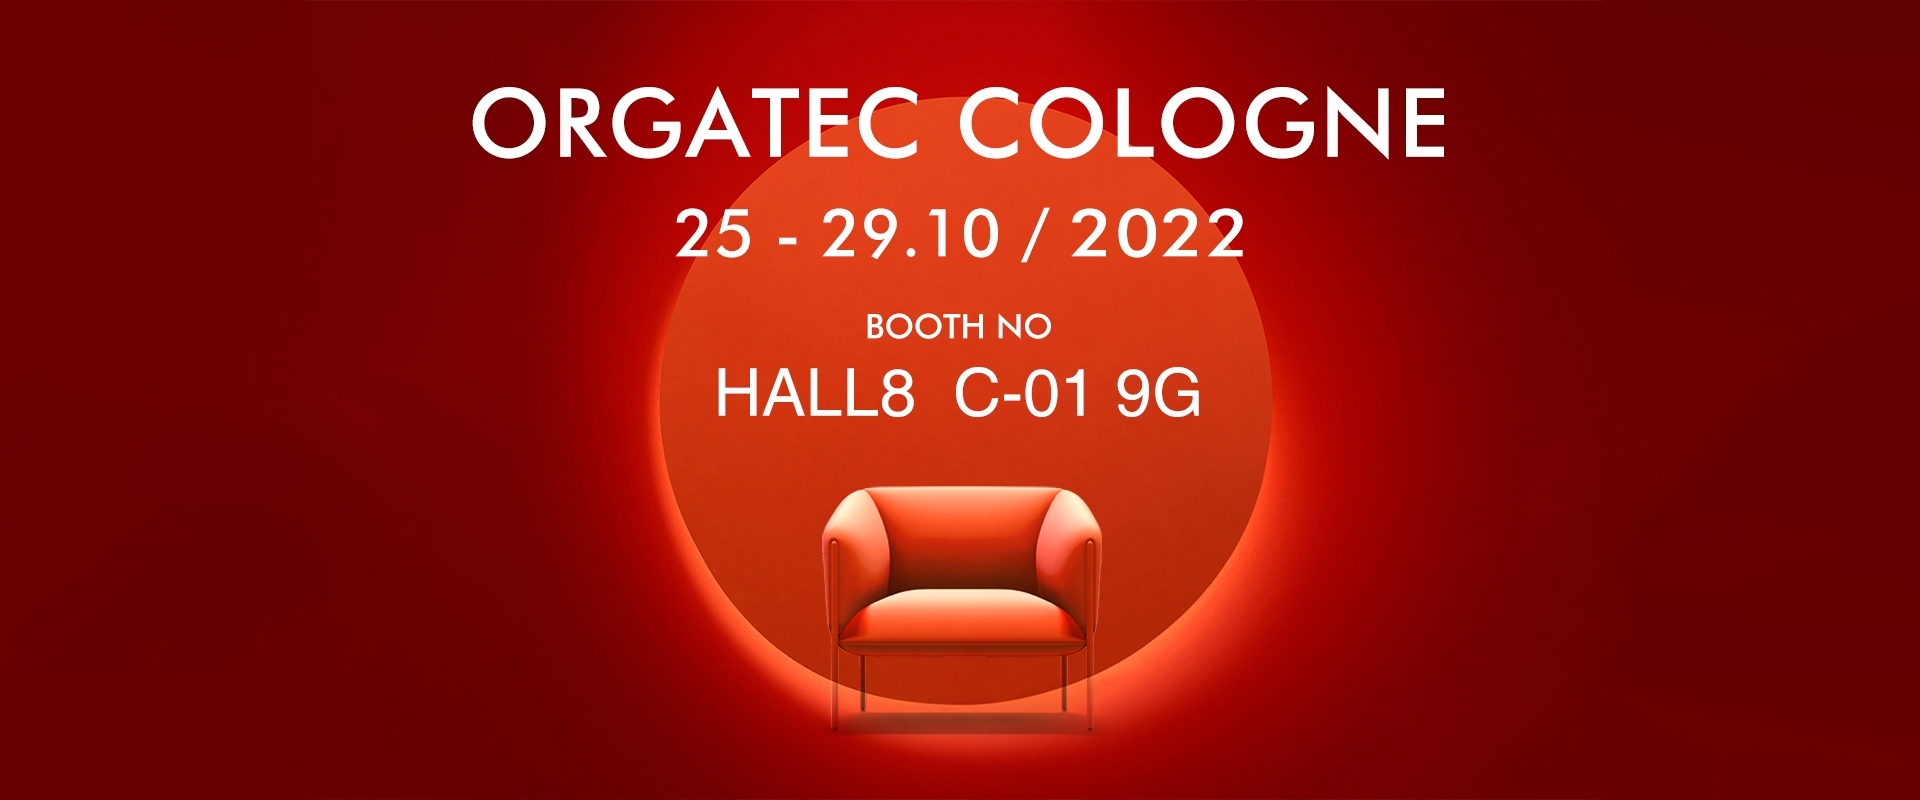 ORGATEC Cologne  2022